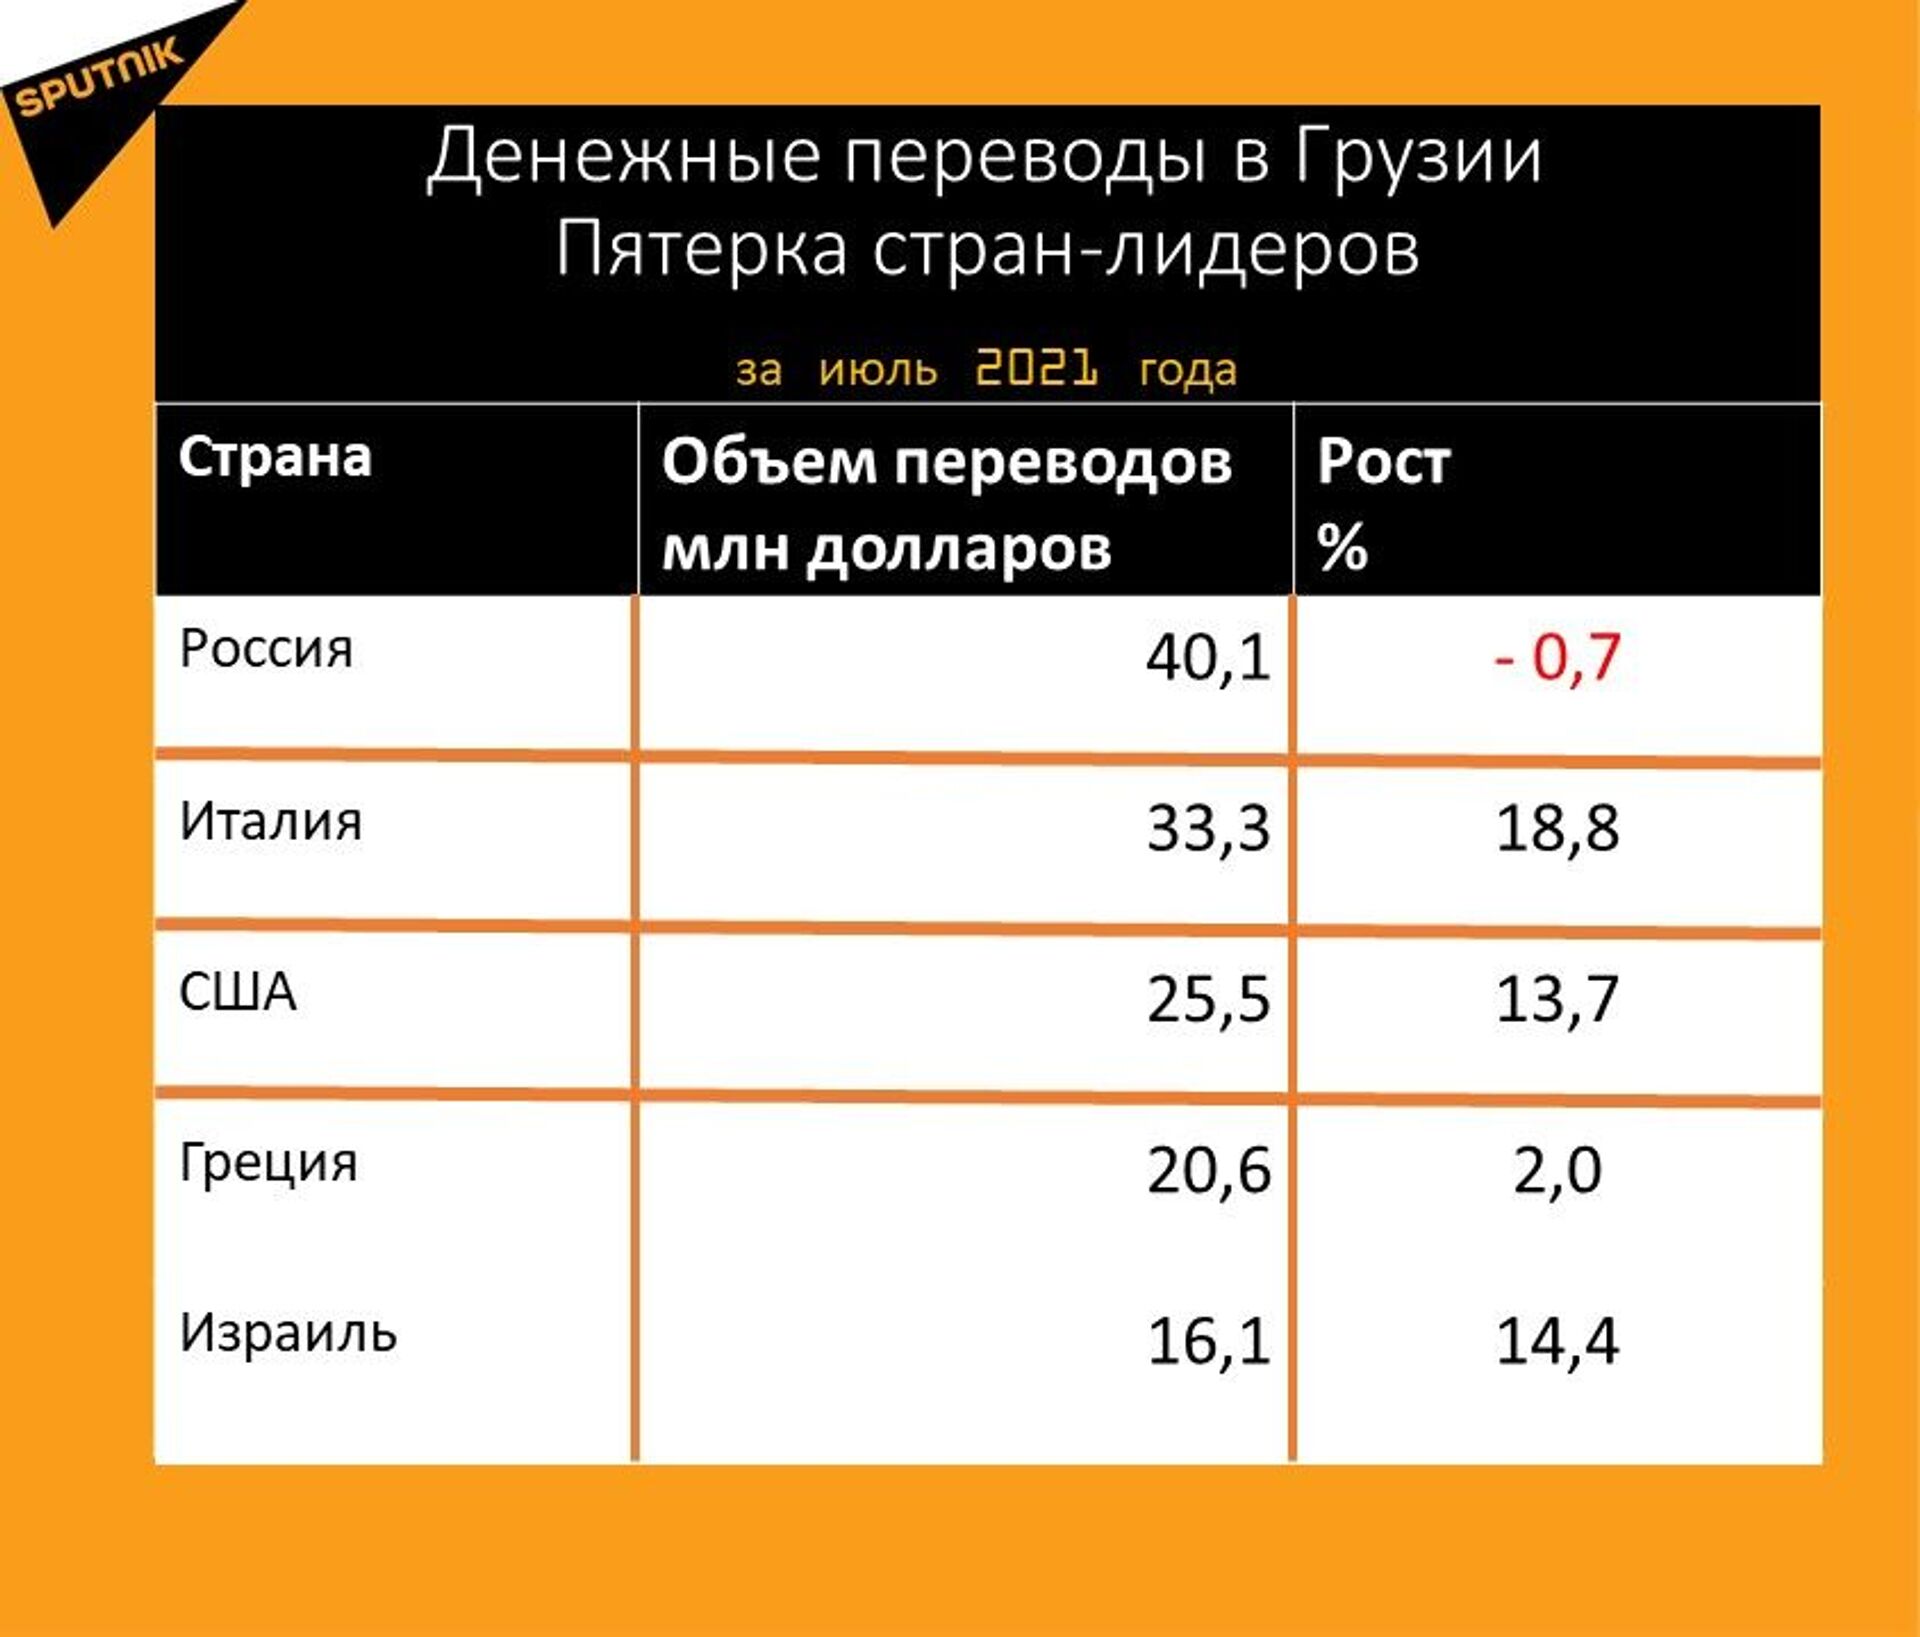 Статистика денежных переводов в Грузию за июль 2021 года - Sputnik Грузия, 1920, 24.08.2021